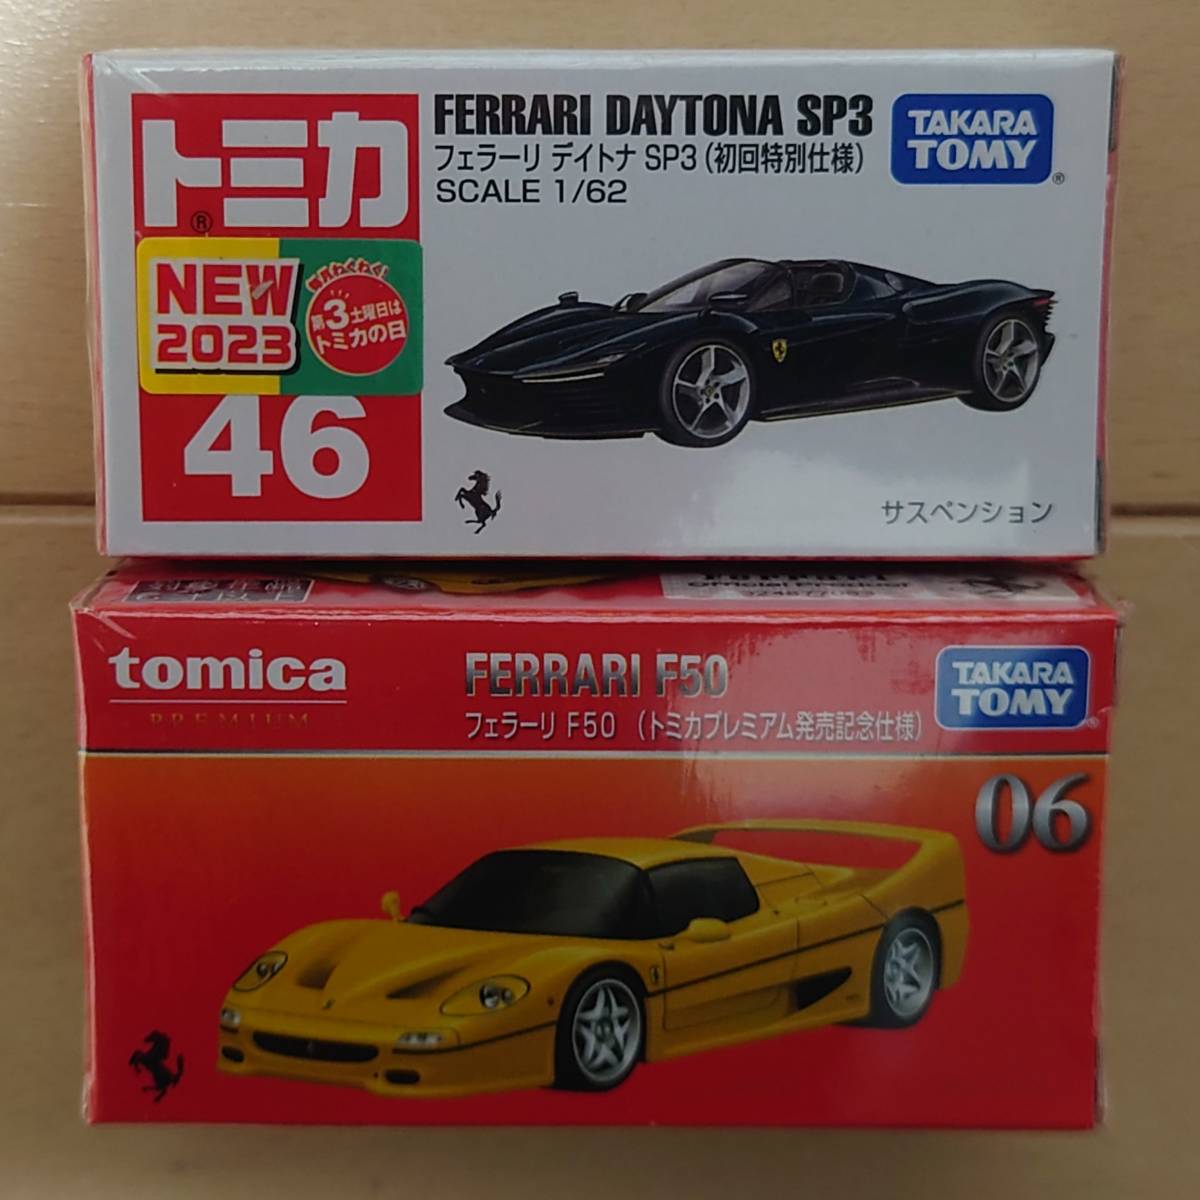 トミカプレミアム 初回発売記念仕様 フェラーリ F50・トミカ 初回特別仕様 フェラーリ デイトナ SP3 新品2台セット_画像1